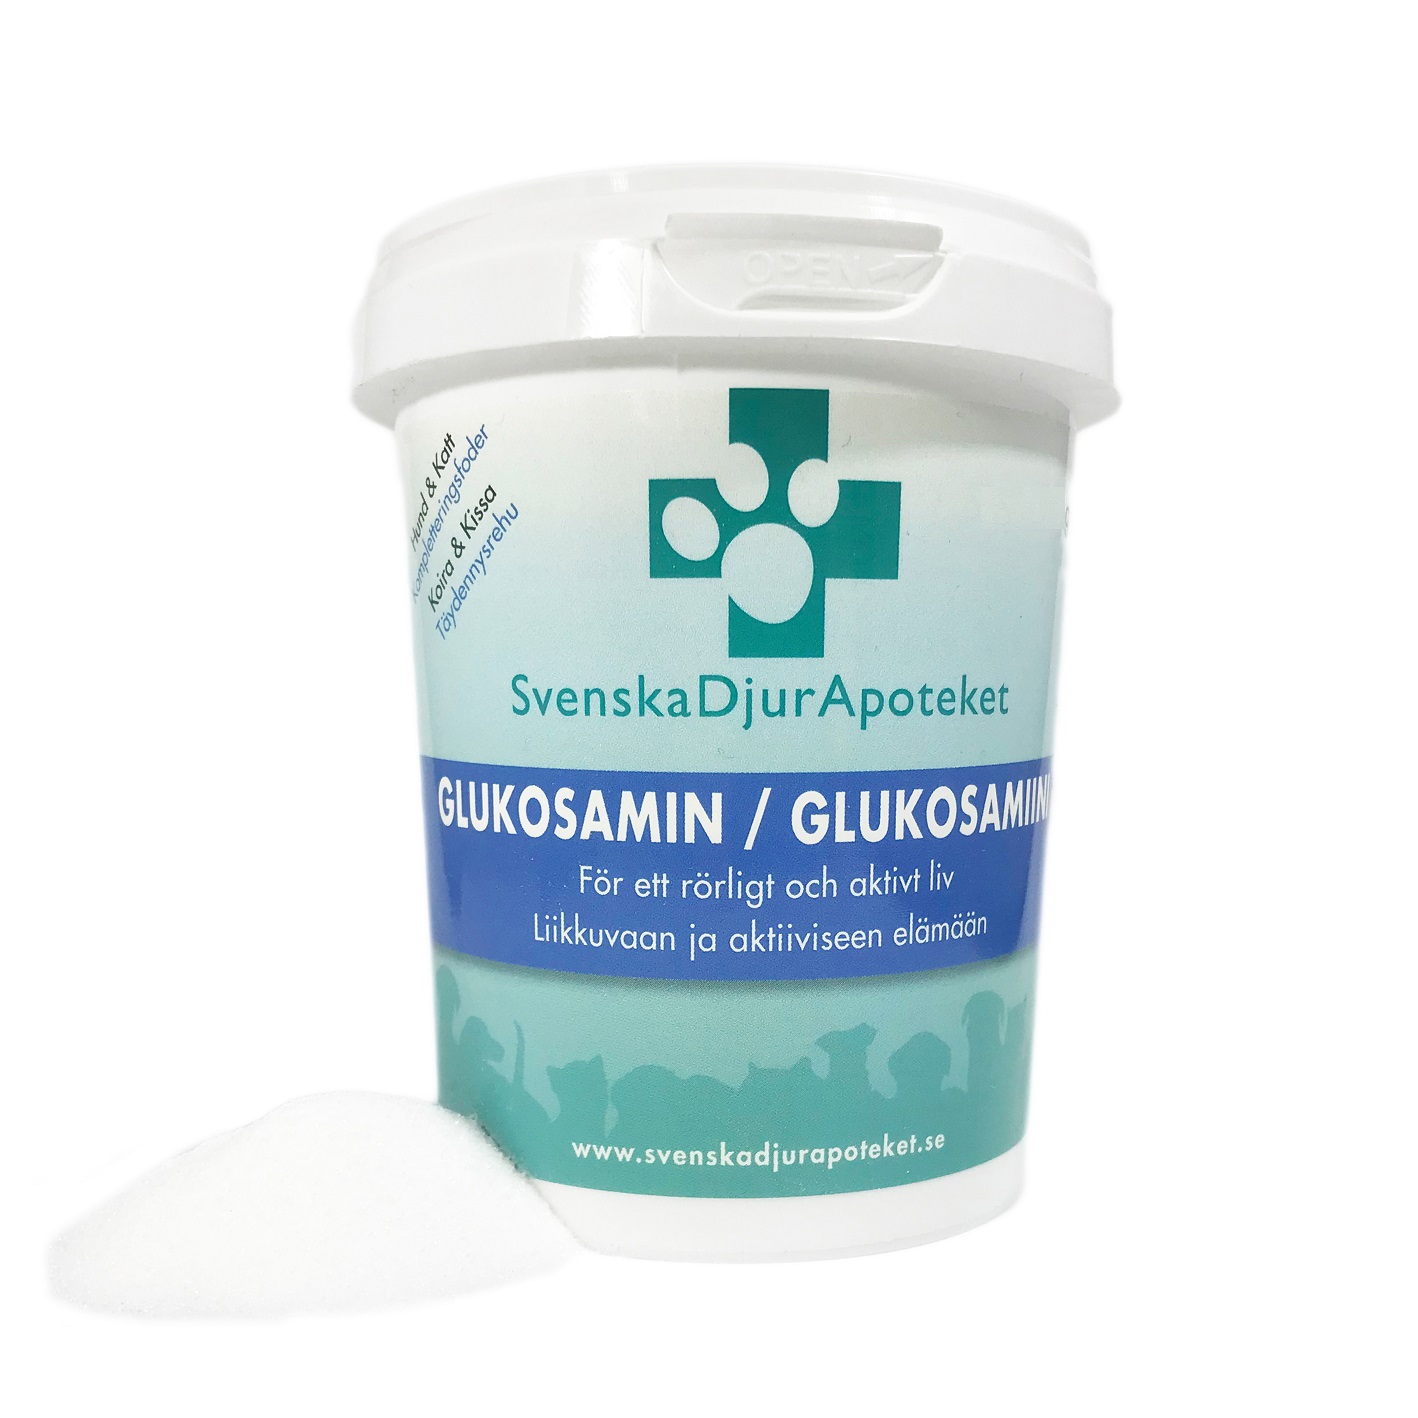 Svenska DjurApotekets Glukosamin  är en förebyggande ledprodukt för djur. Glukosamin bidrar till en god ledhälsa på lång sikt och främjar ledernas hälsa och normala funktion.